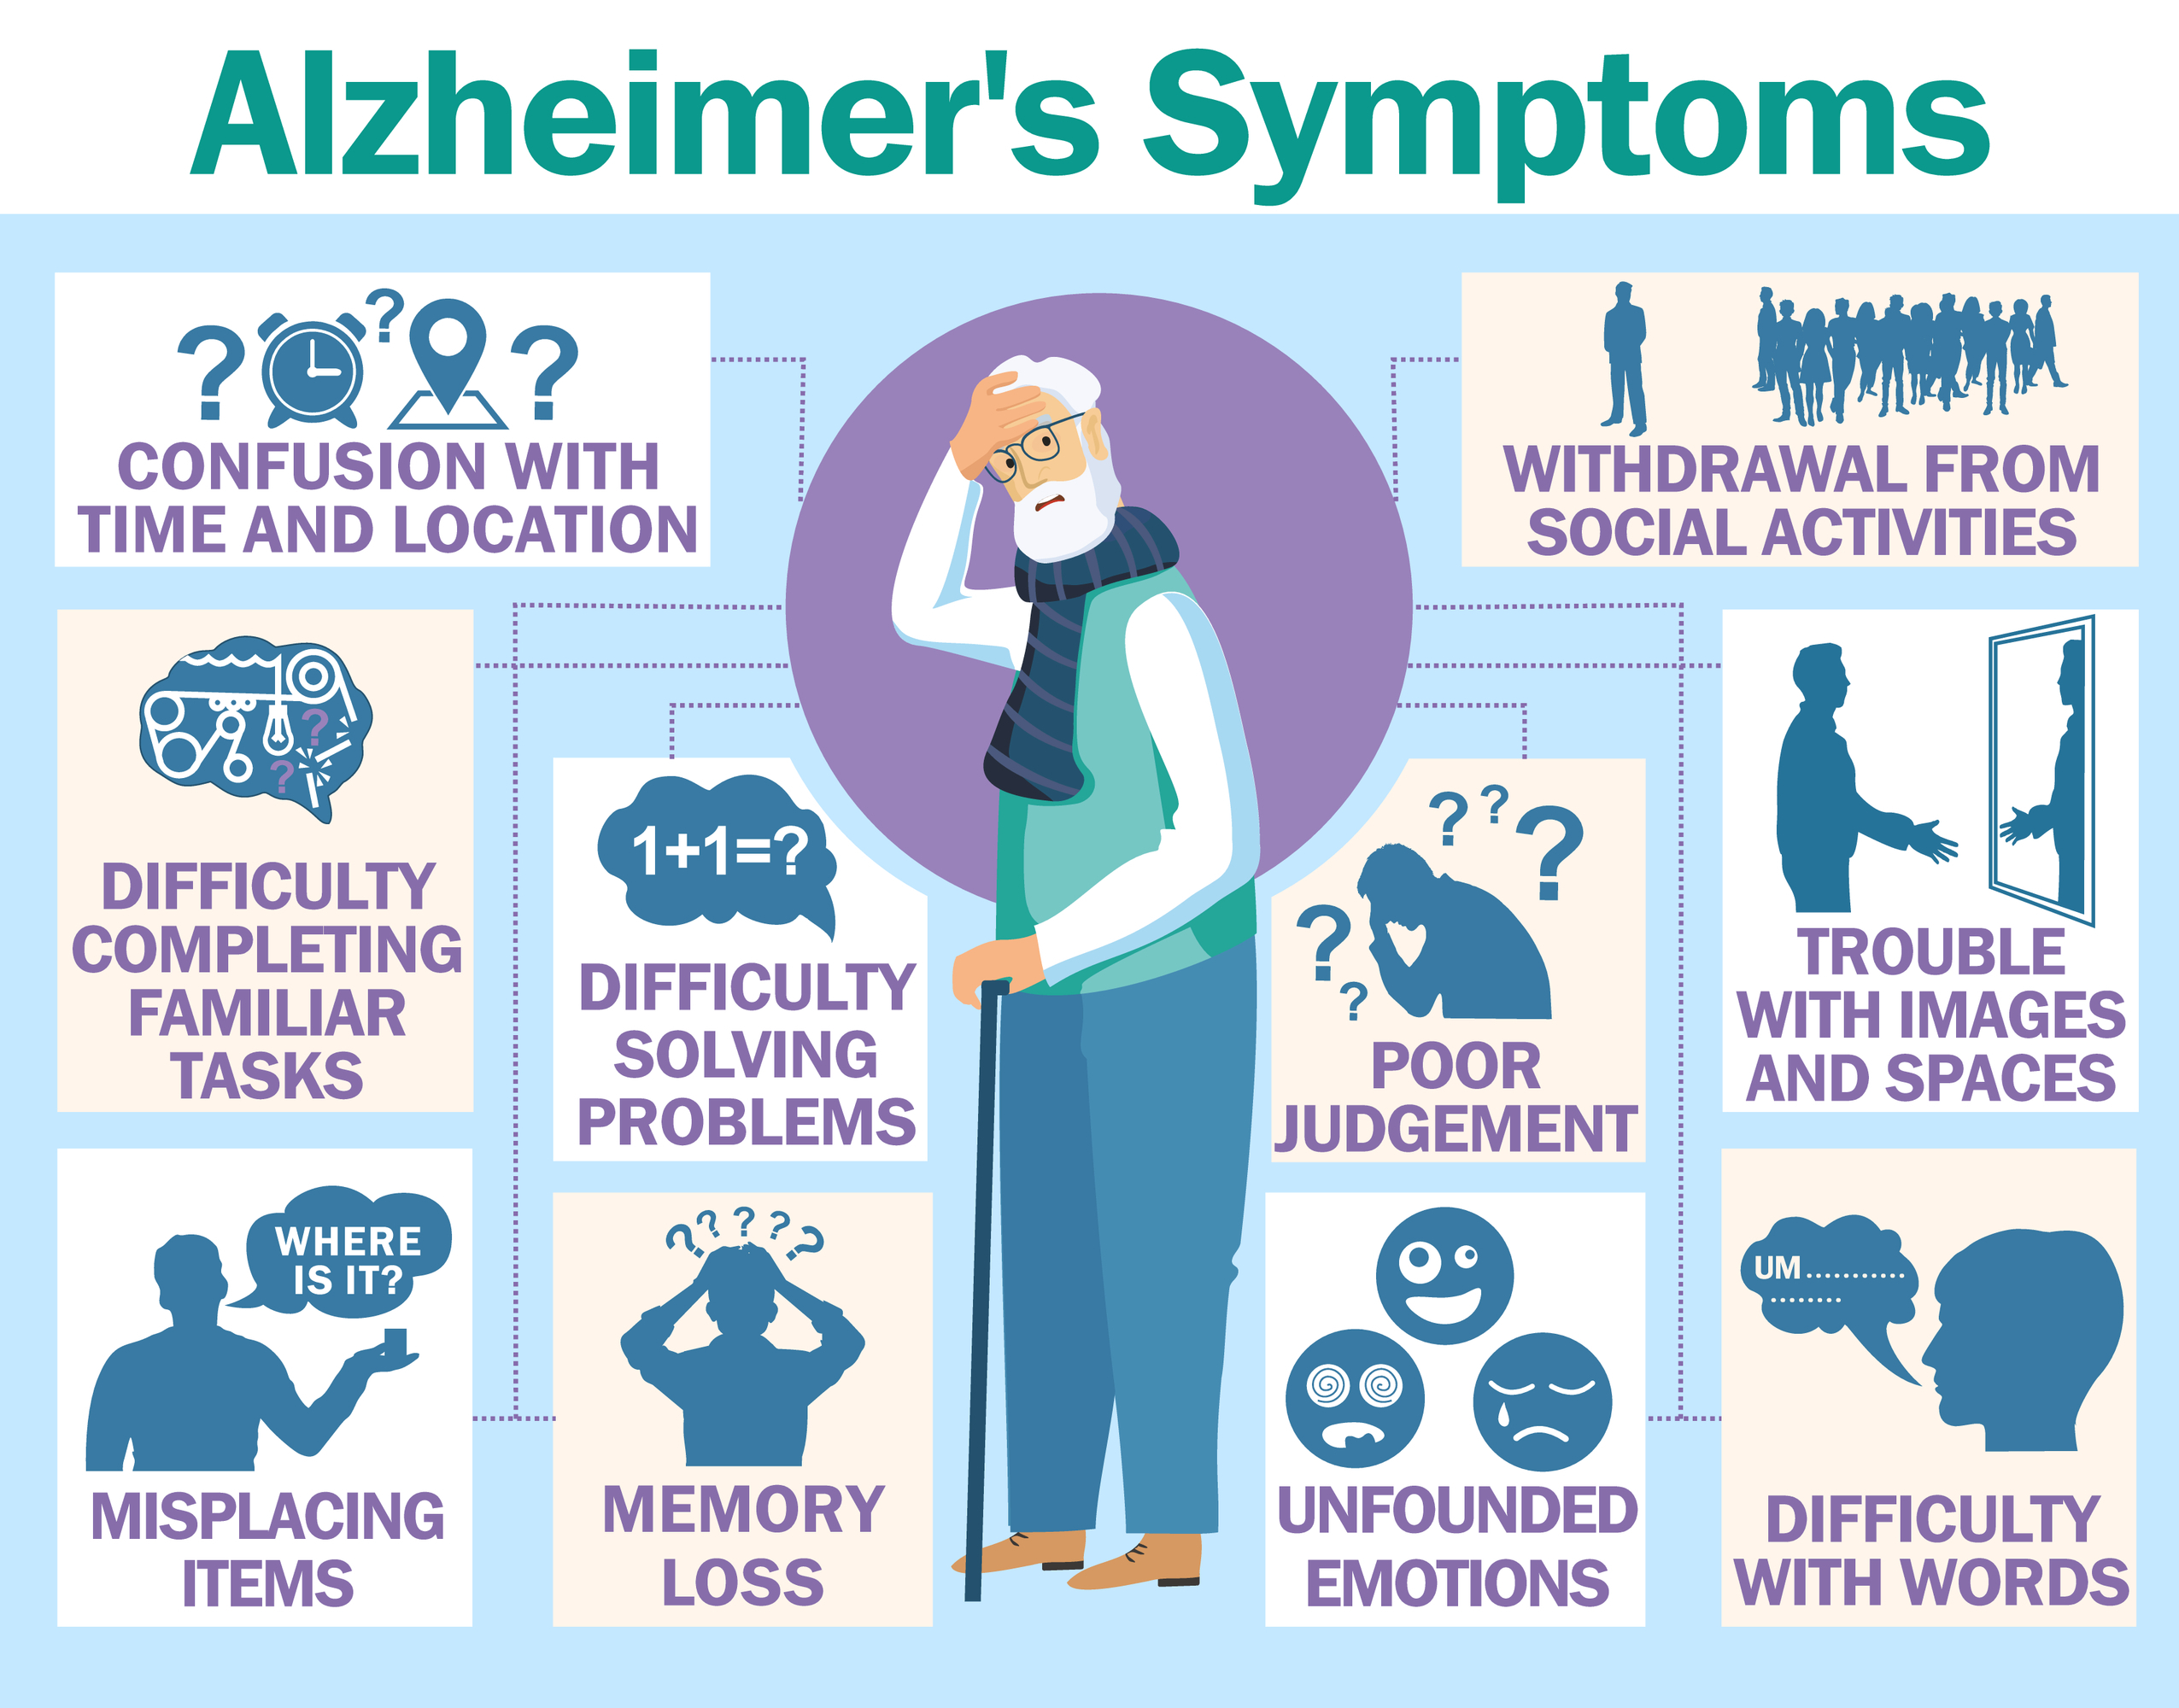 Alzheimer’s looms large for seniors